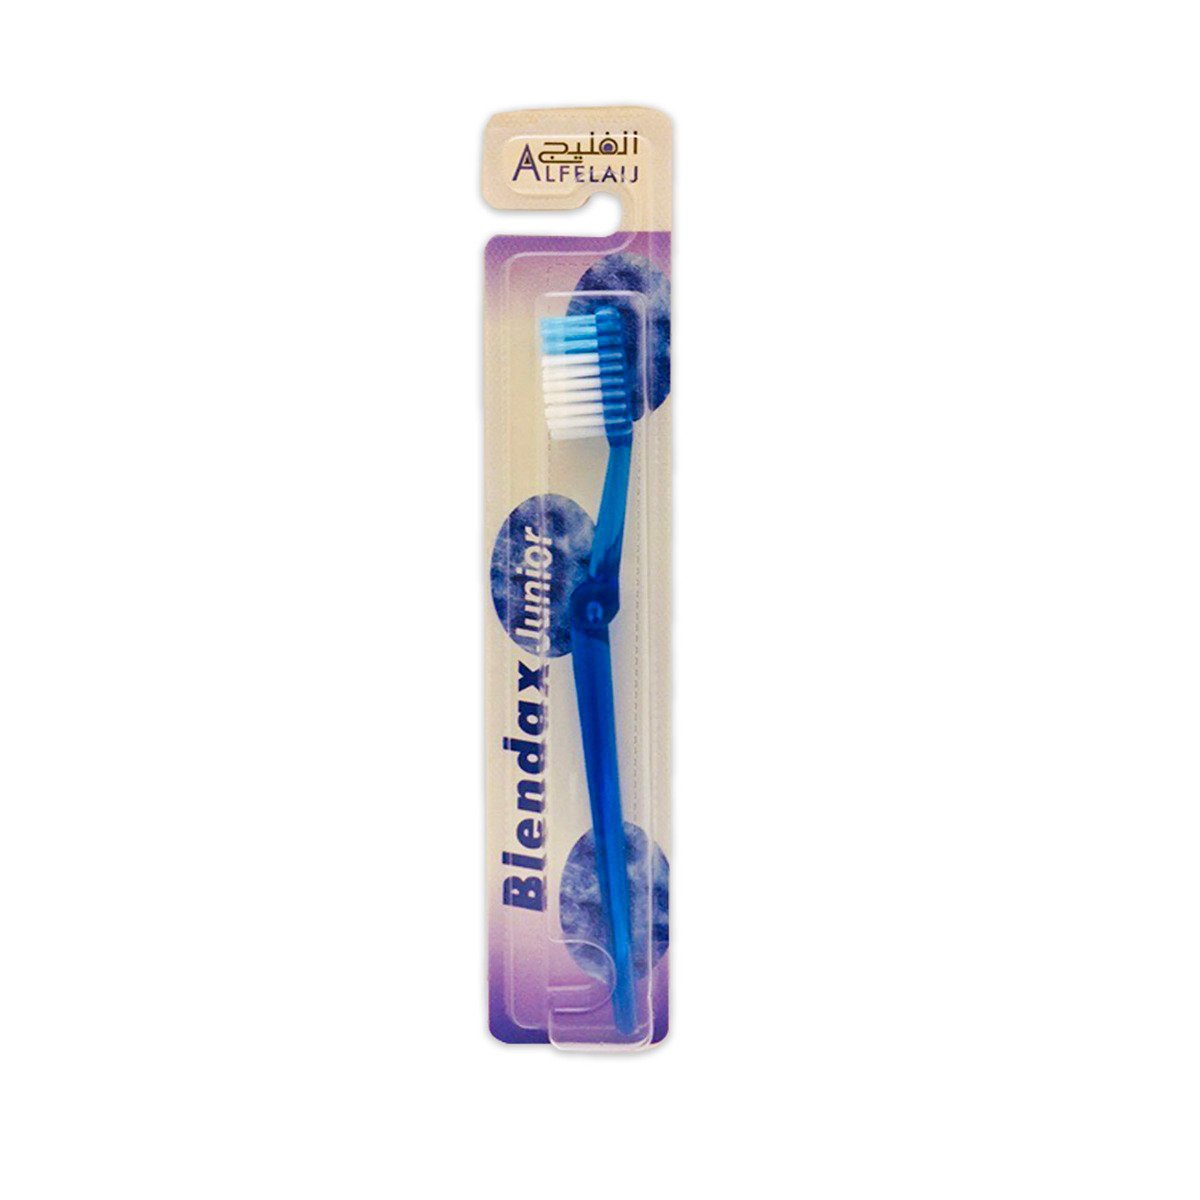 Al Felaij Junior Blendax Toothbrush 1pc